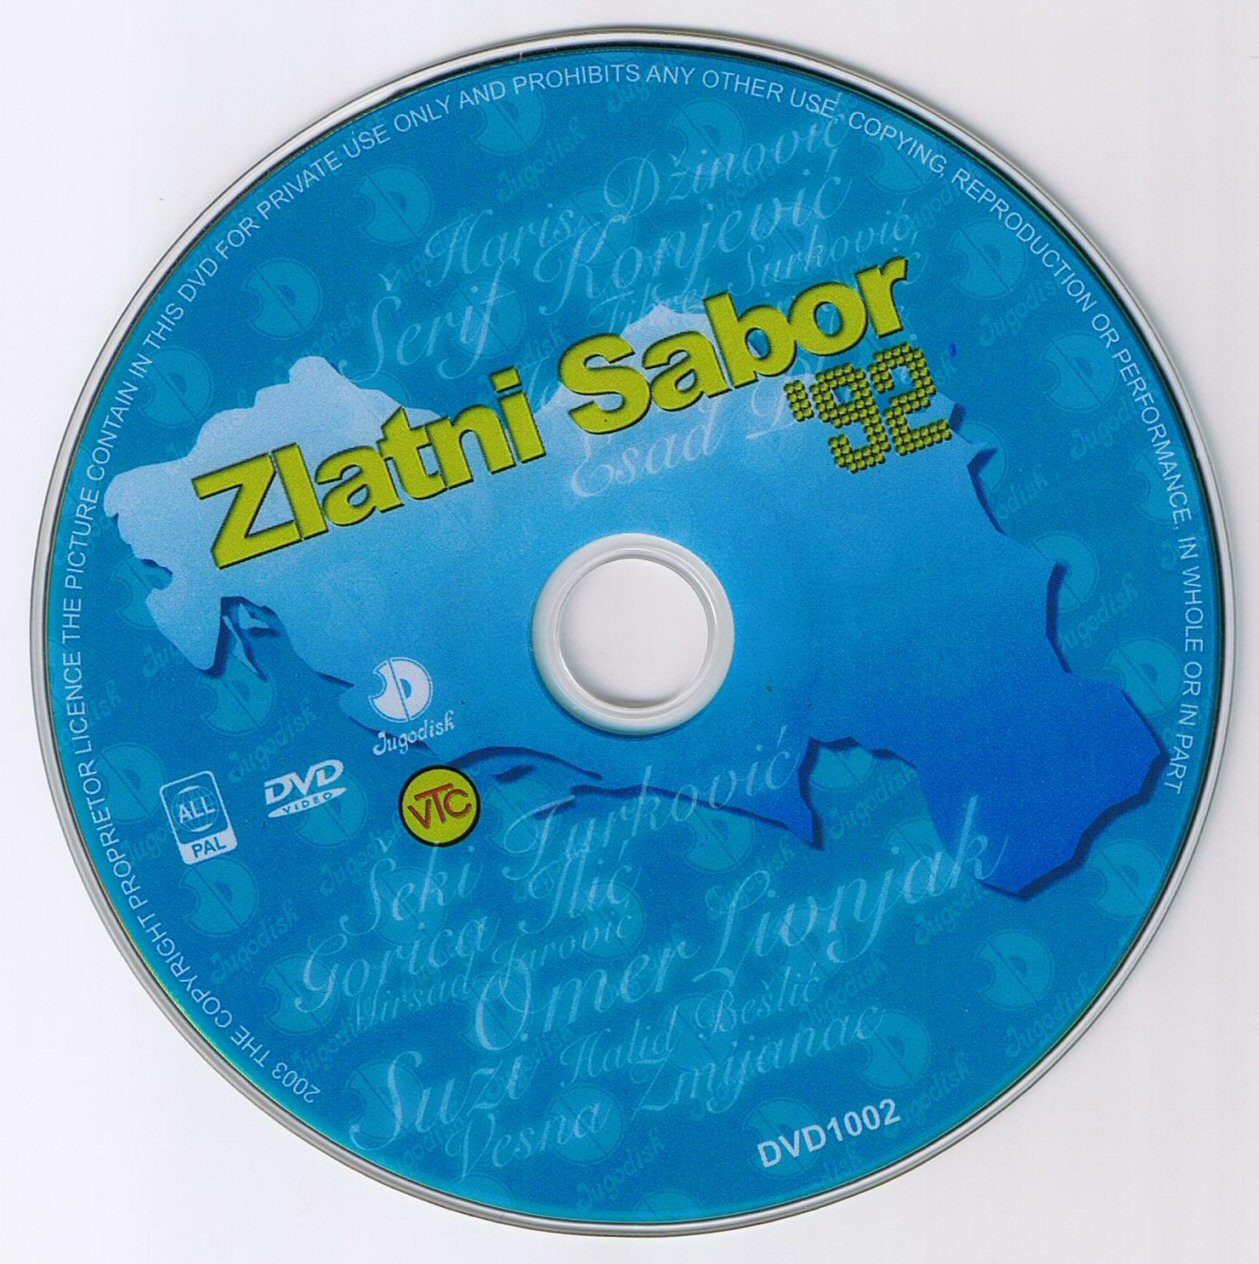 Click to view full size image -  DVD Cover - Z - Zlatni sabor - DVD ZLATNI SABOR 1 - CD.JPG